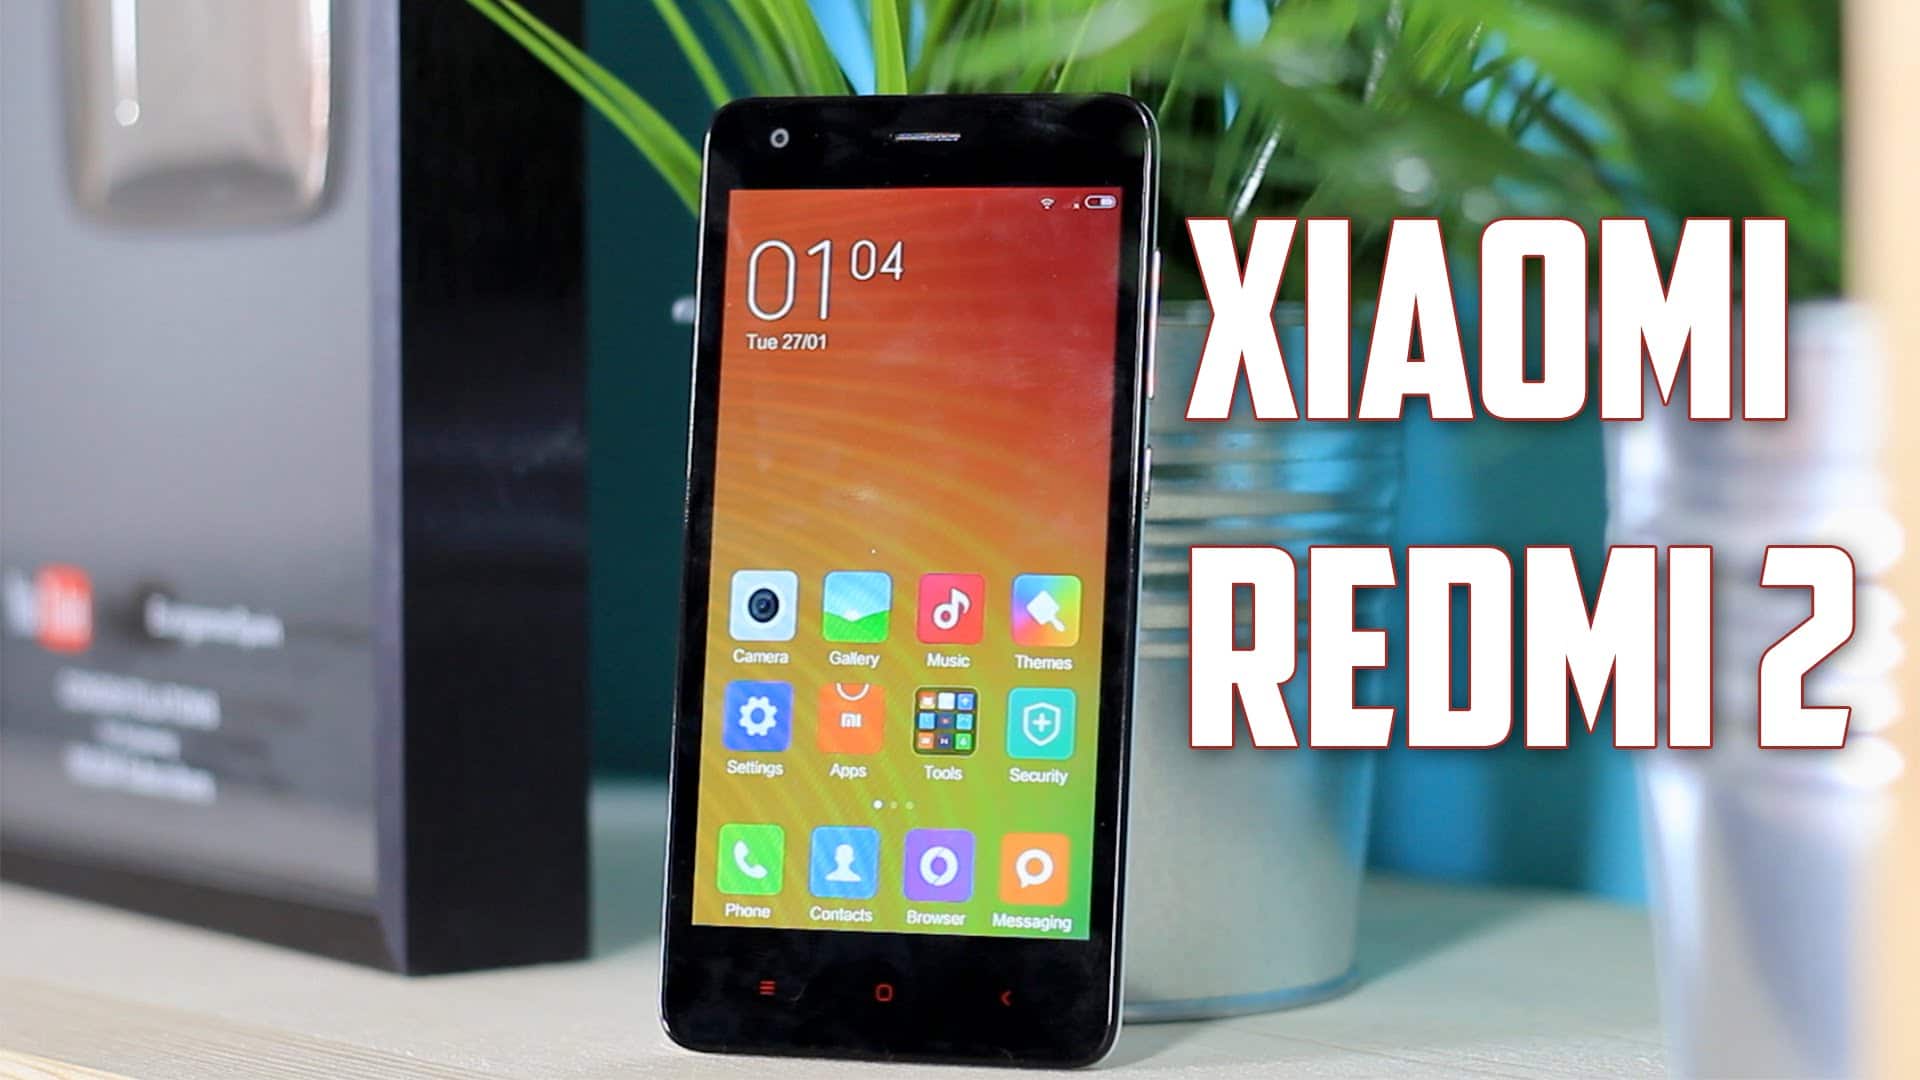 Xiaomi Redmi 4 Rom